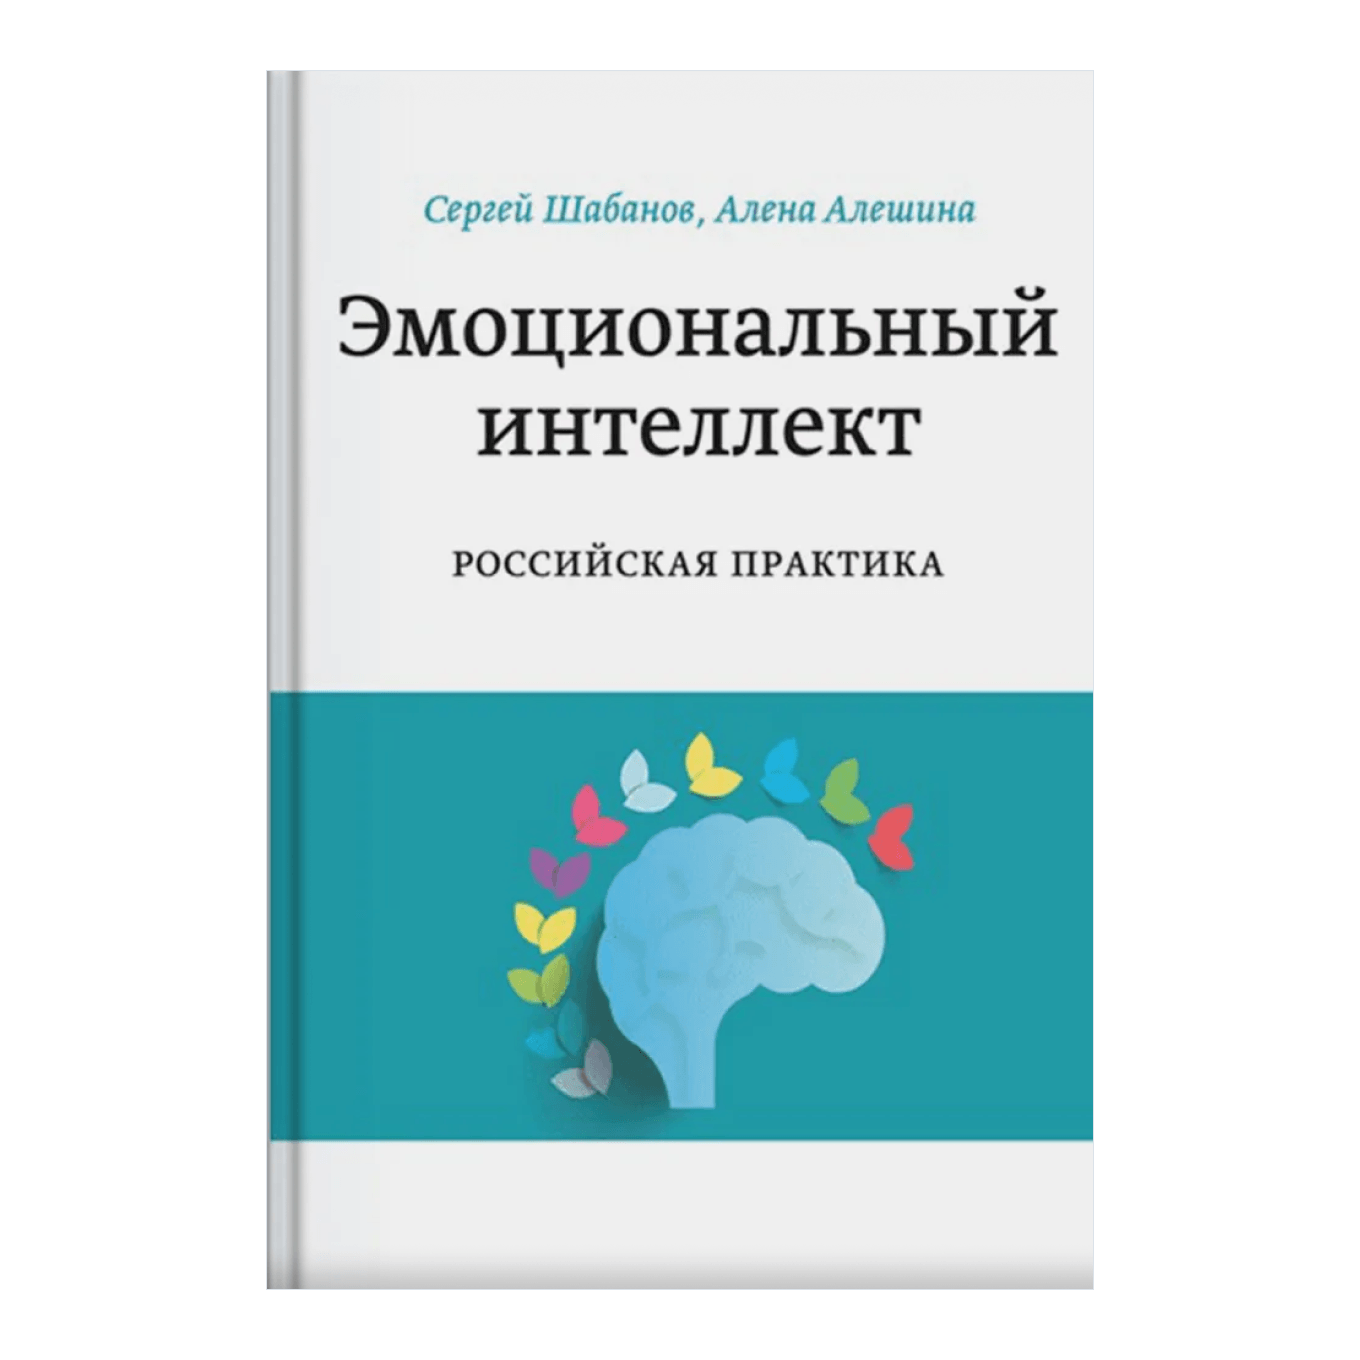 Книга Сергея Шабанова и Алены Алешиной «Эмоциональный интеллект. Российская практика»